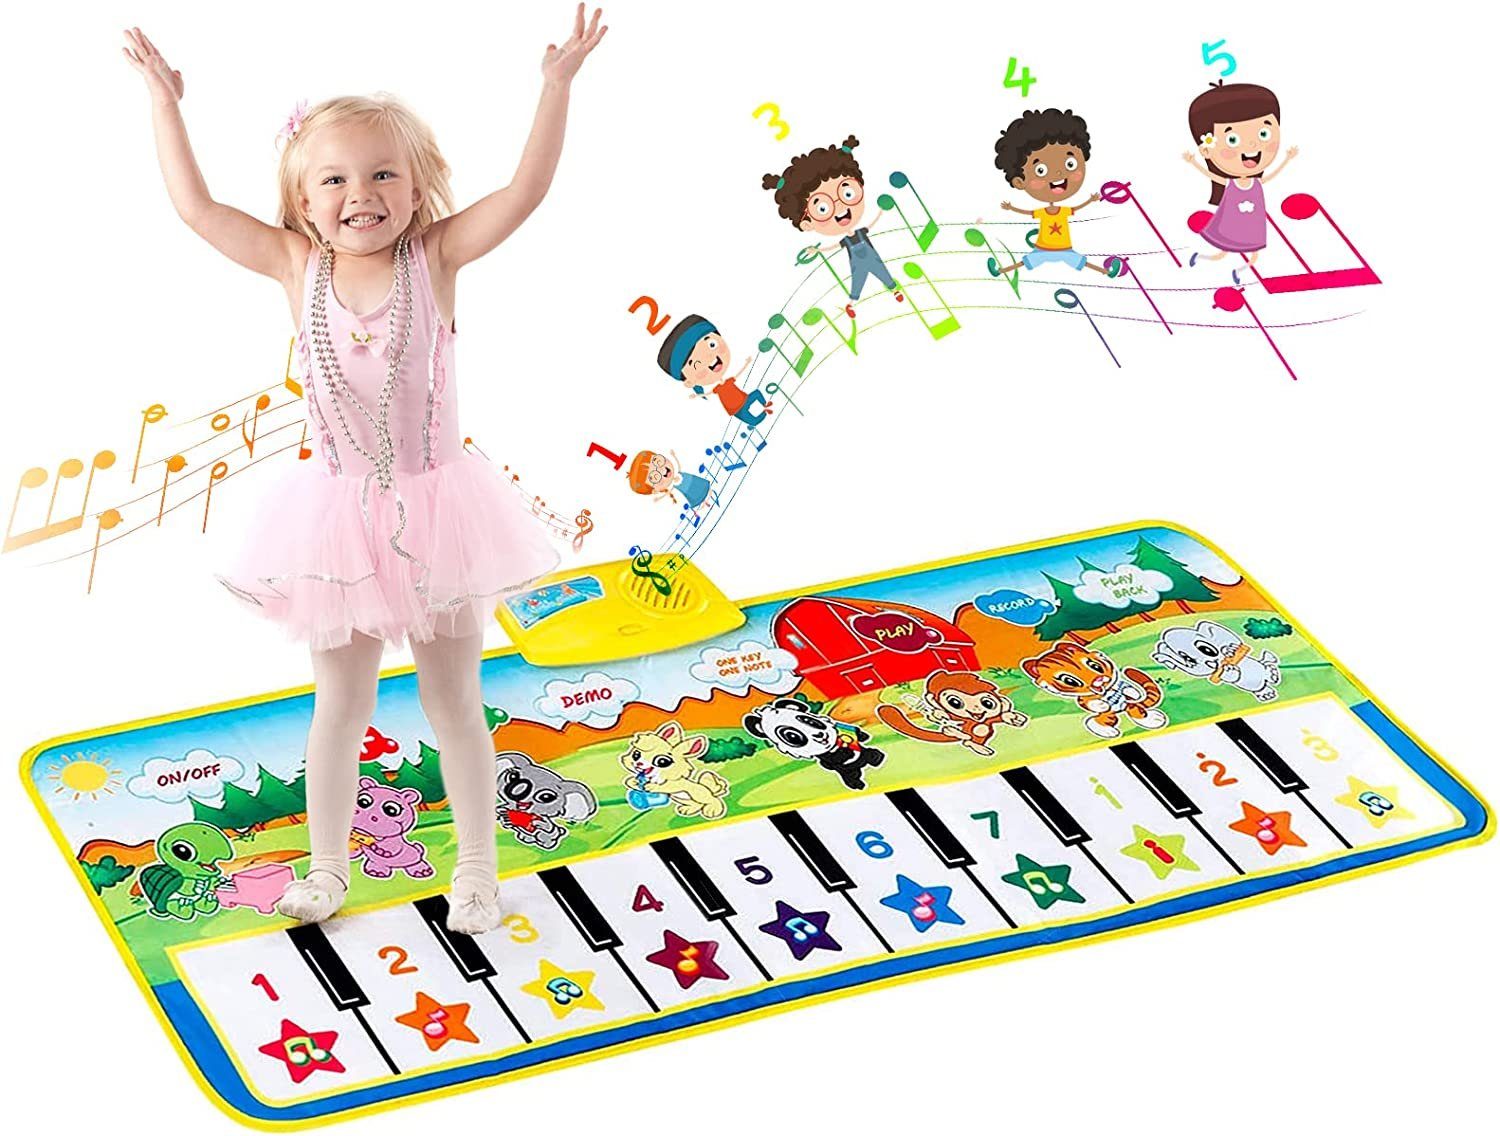 EXTSUD Spielmatte Klaviermatte Kinderspielzeug Mädchen Kleinkinder Baby Spielzeug (Klaviertastatur Keyboard Musikmatte Tanzmatten, Kindergeburtstag Geschenk), für Jungen Mädchen Kleinkinder,Baby Spielzeug ab 1 Jahr